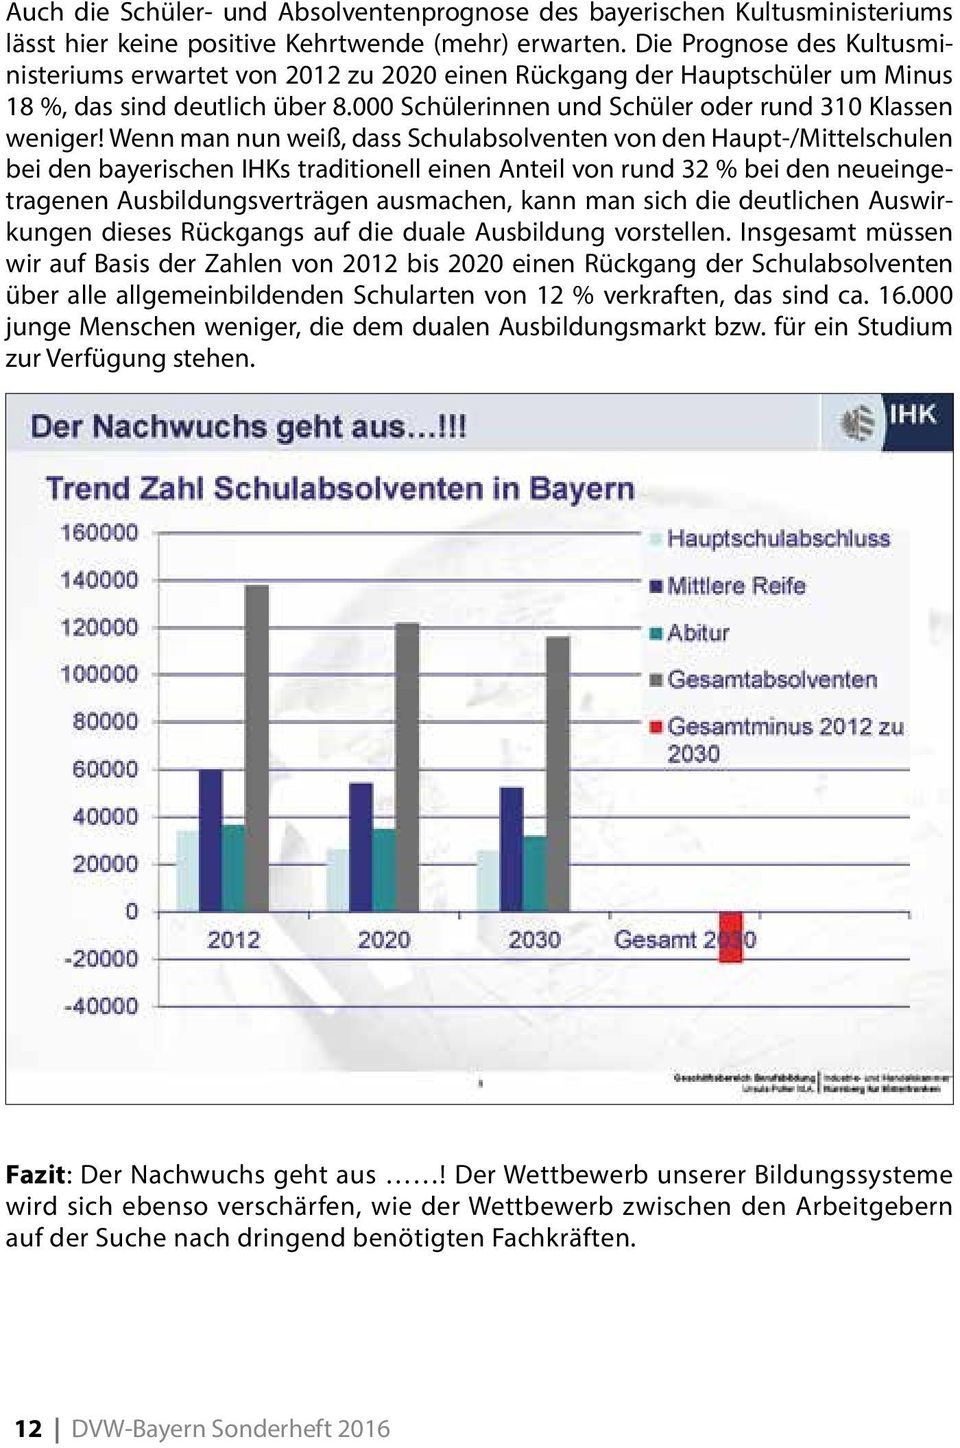 Wenn man nun weiß, dass Schulabsolventen von den Haupt-/Mittelschulen bei den bayerischen IHKs traditionell einen Anteil von rund 32 % bei den neueingetragenen Ausbildungsverträgen ausmachen, kann